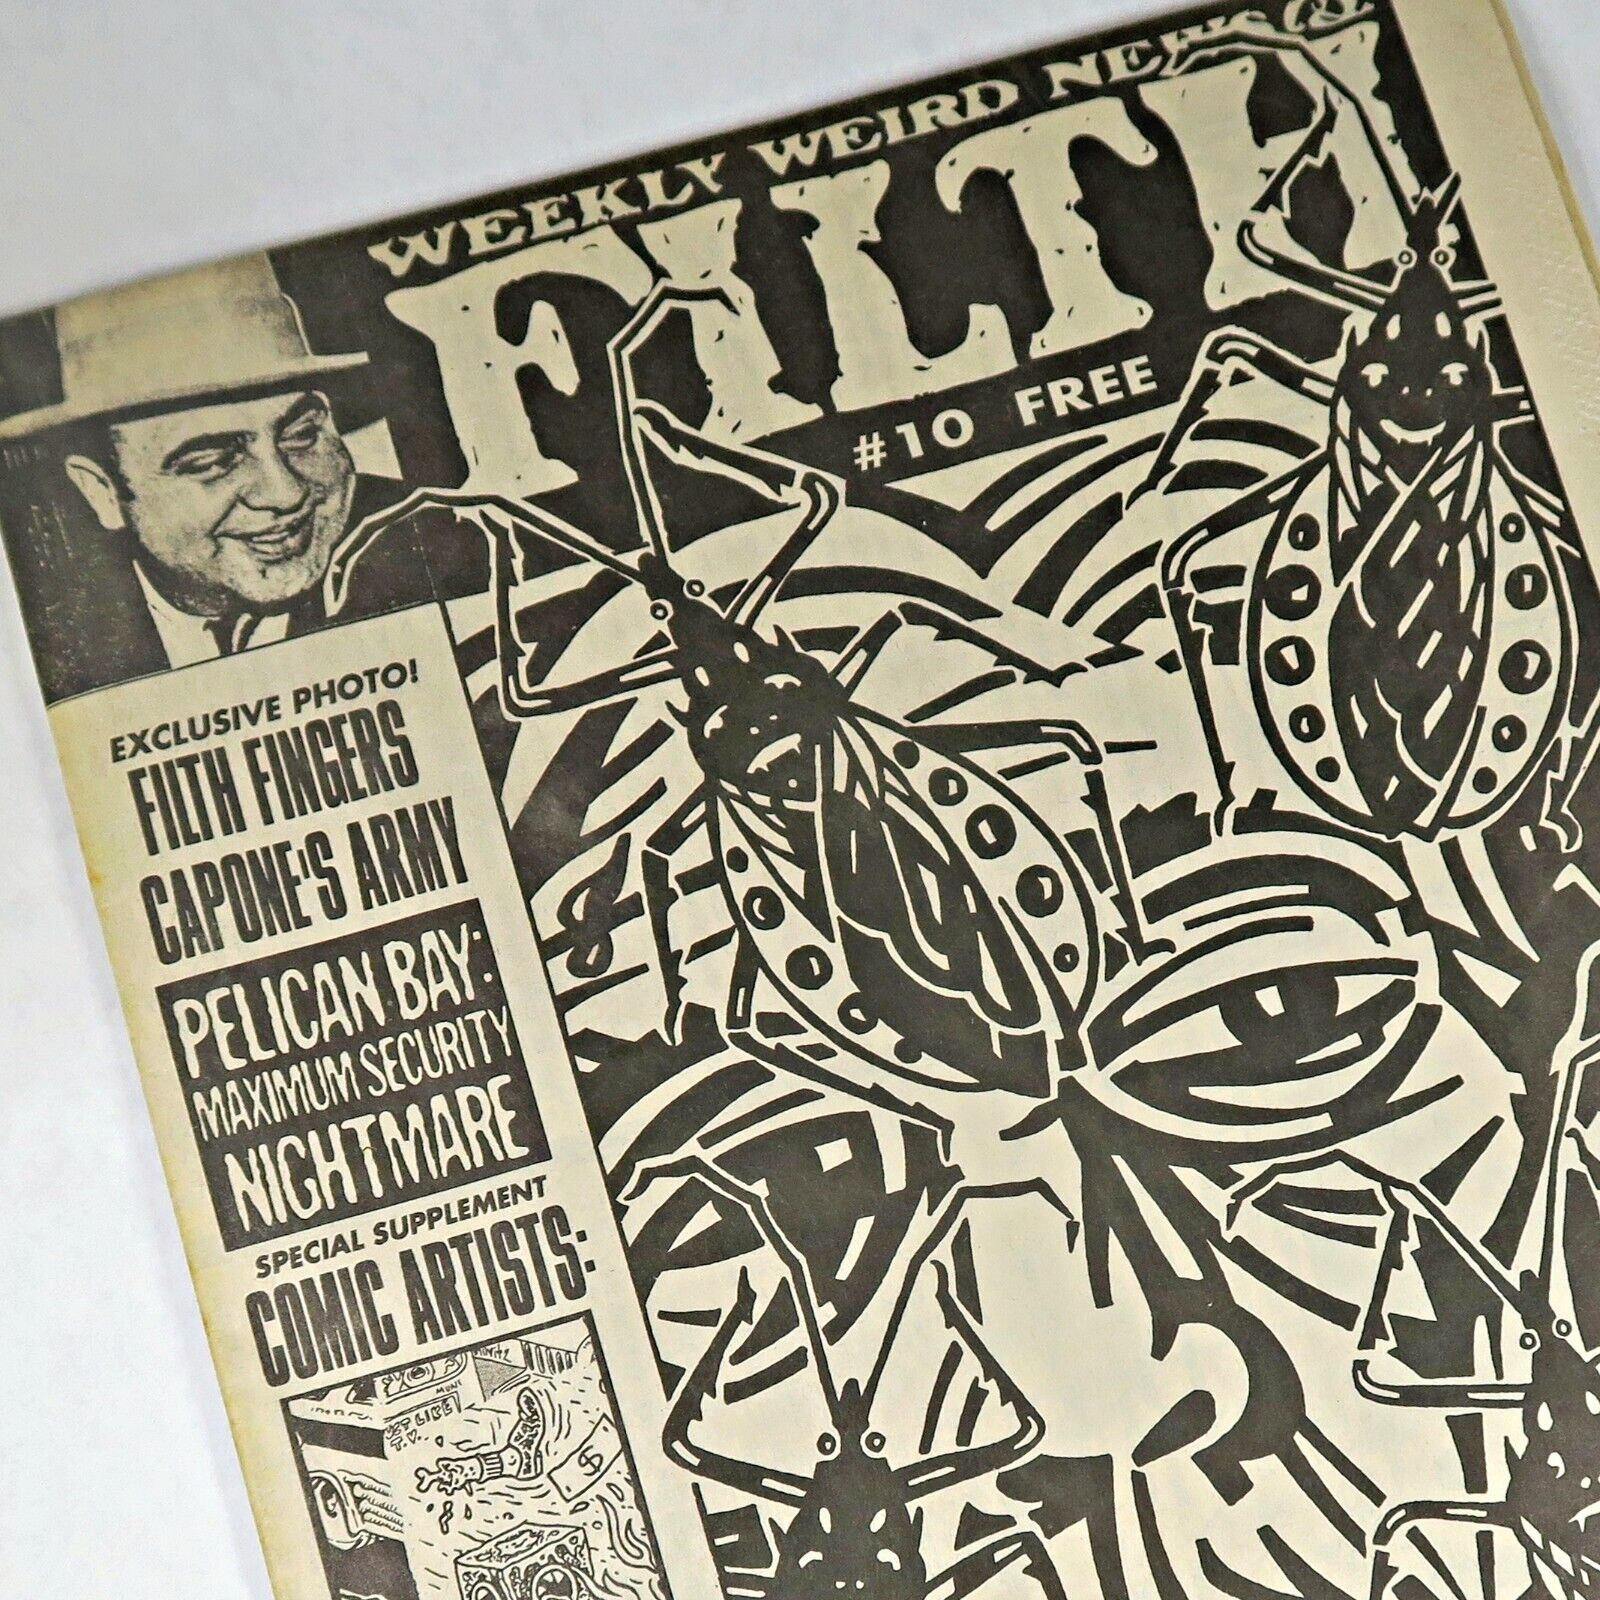 Weekly Weird News & Filth #10 1993 San Francisco Chuck Sperry Alt Newspaper Rigo